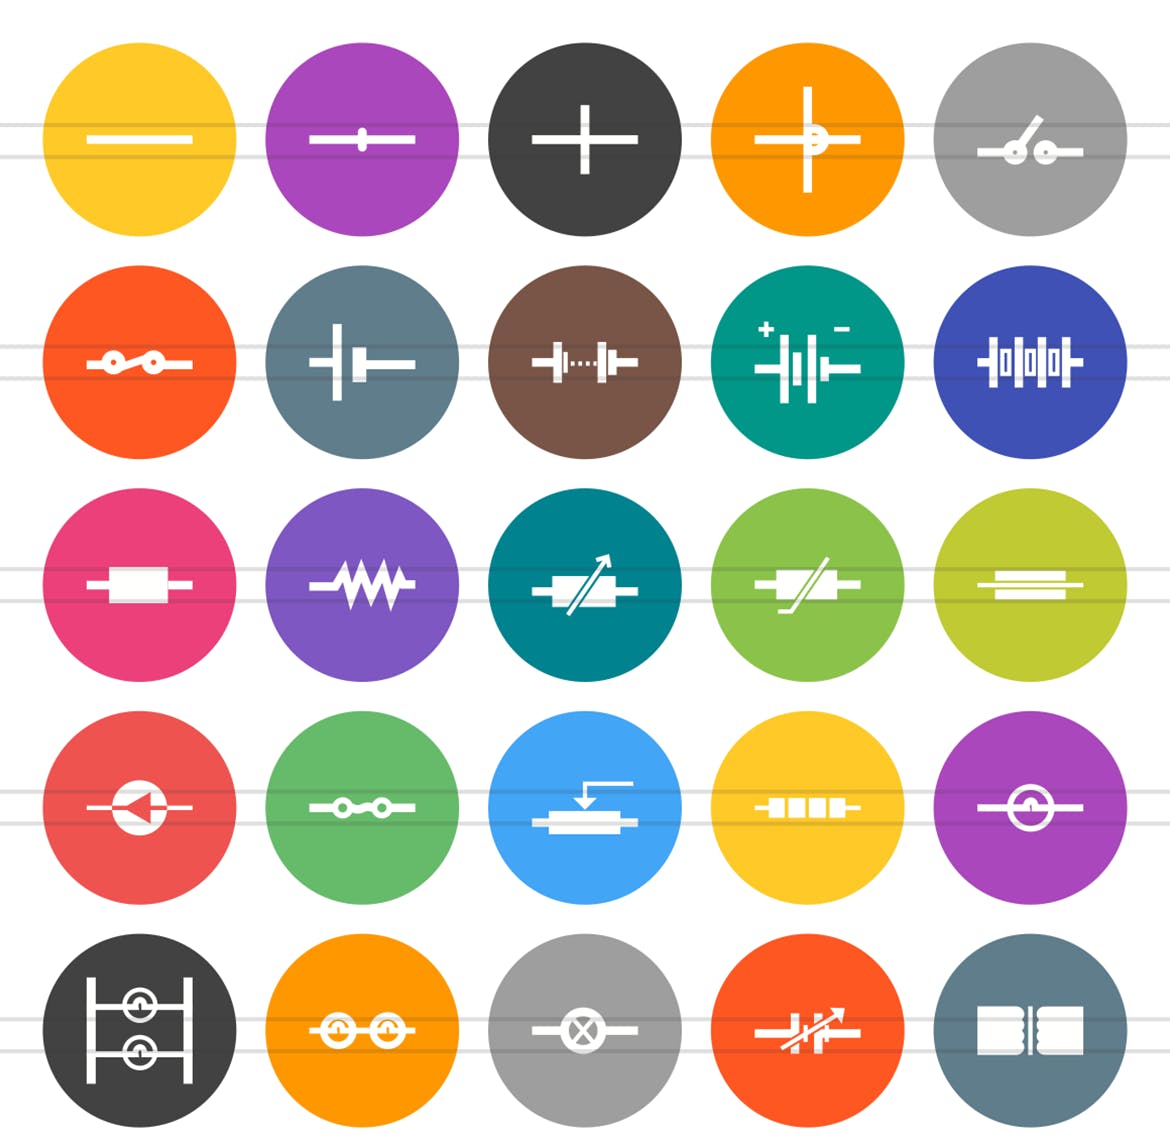 50枚电路线路板主题扁平风圆形第一素材精选图标 50 Electric Circuits Flat Round Icons插图(1)